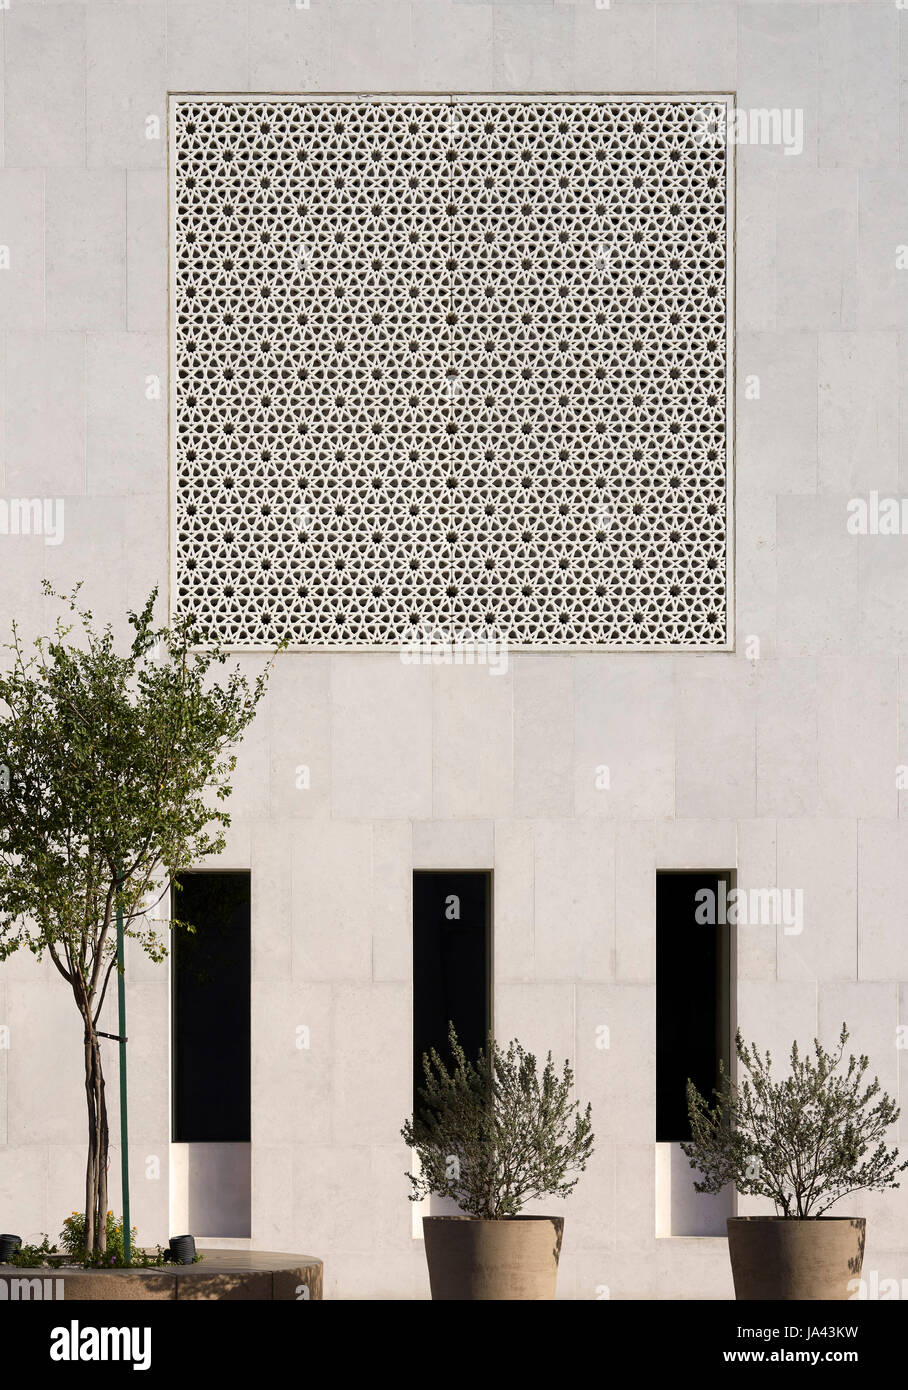 Modèle islamique géométrique dans l'altitude. Mosquée Jumaa, Doha, Emirats Arabes Unis. Architecte : John McAslan & Partners, 2017. Banque D'Images